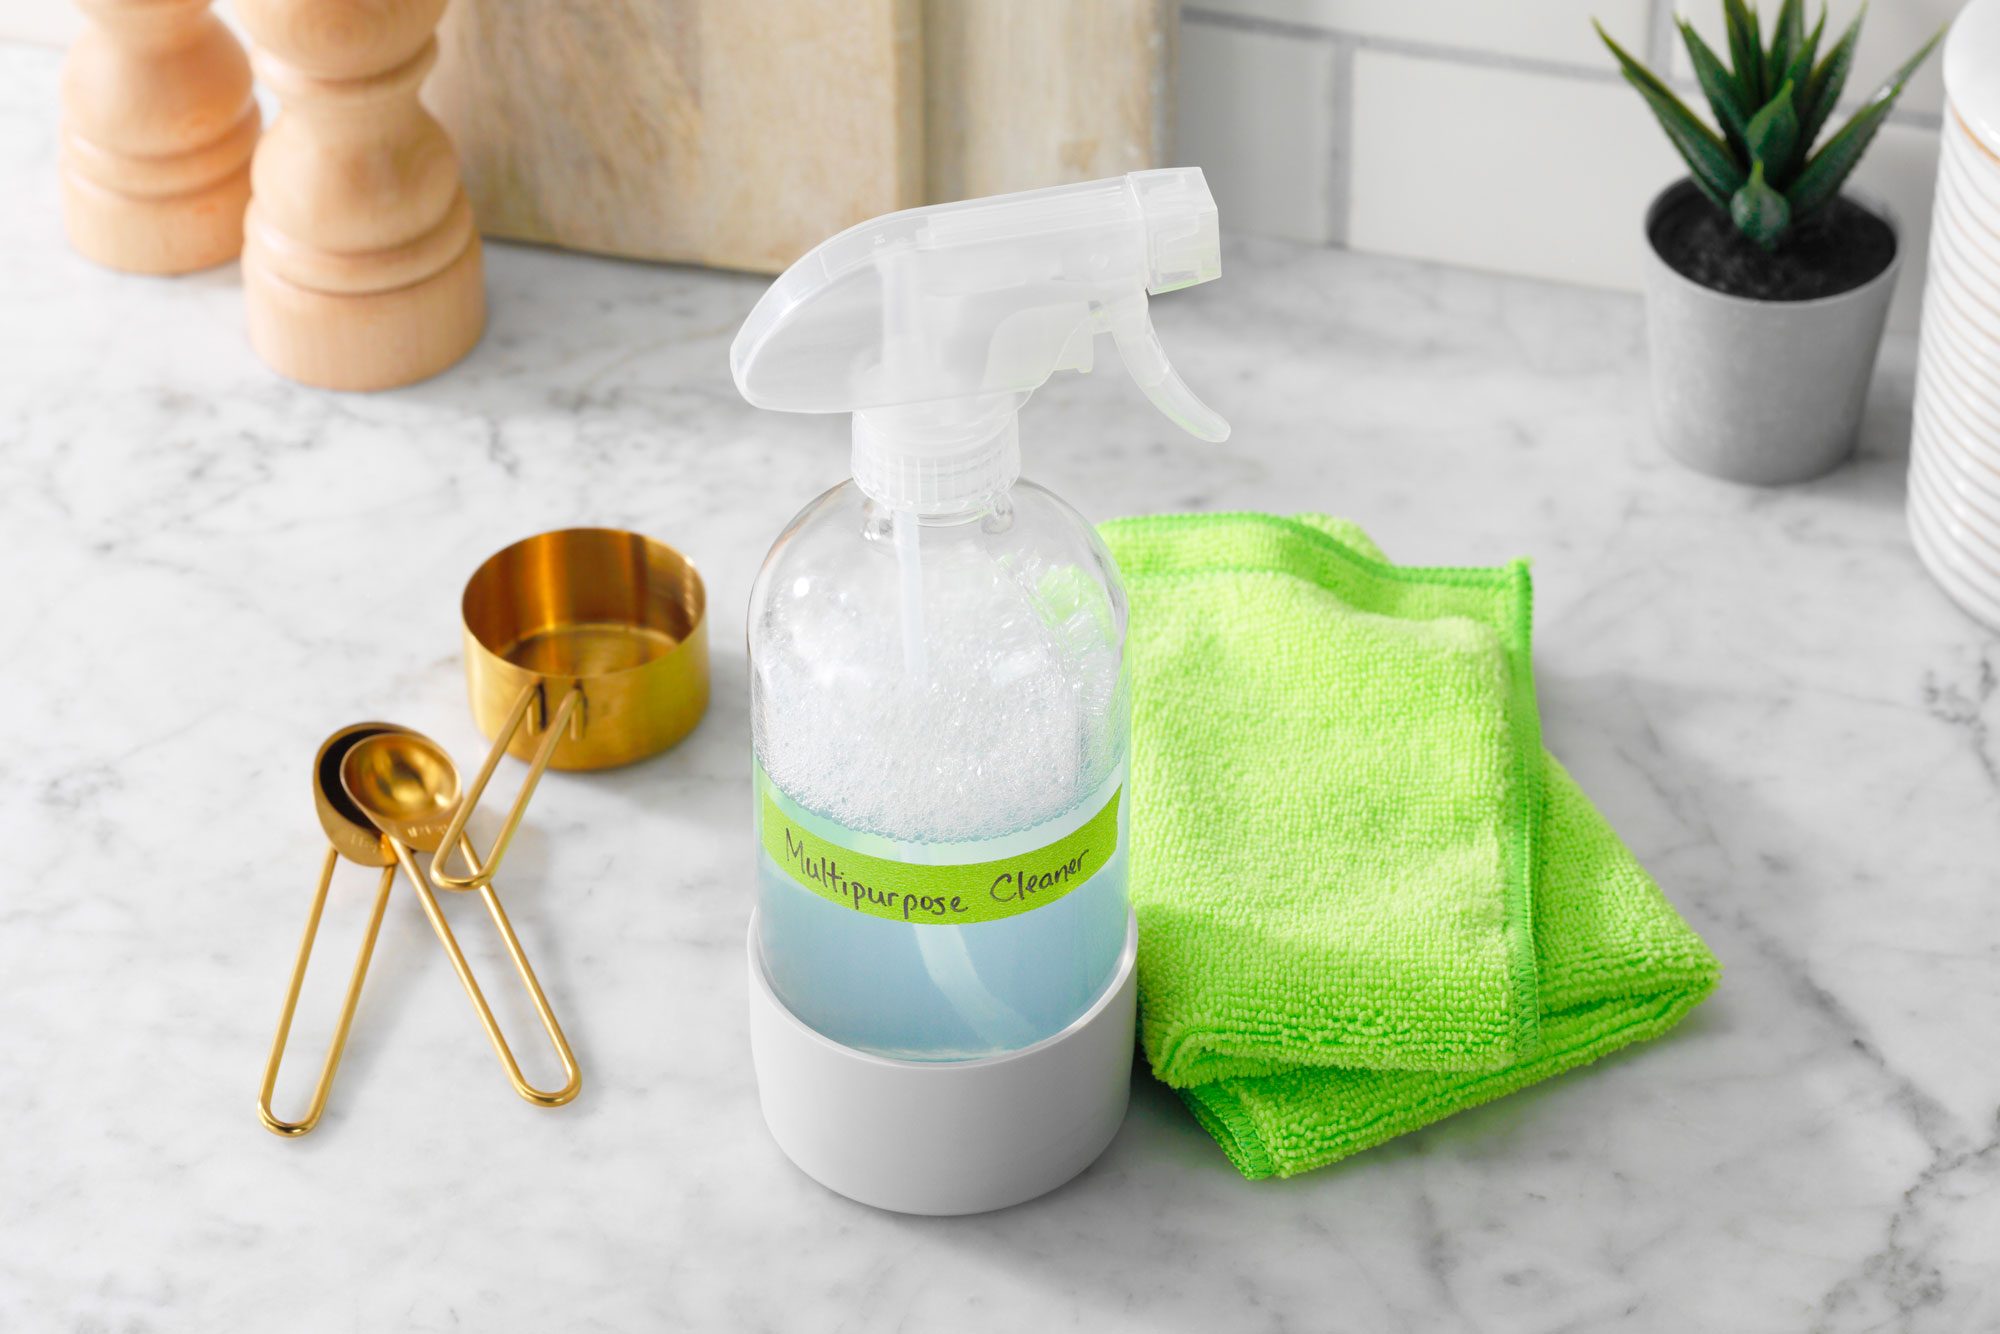 W Home Soap Dispensing Dish Brush, Multi-purpose, Safe for Non